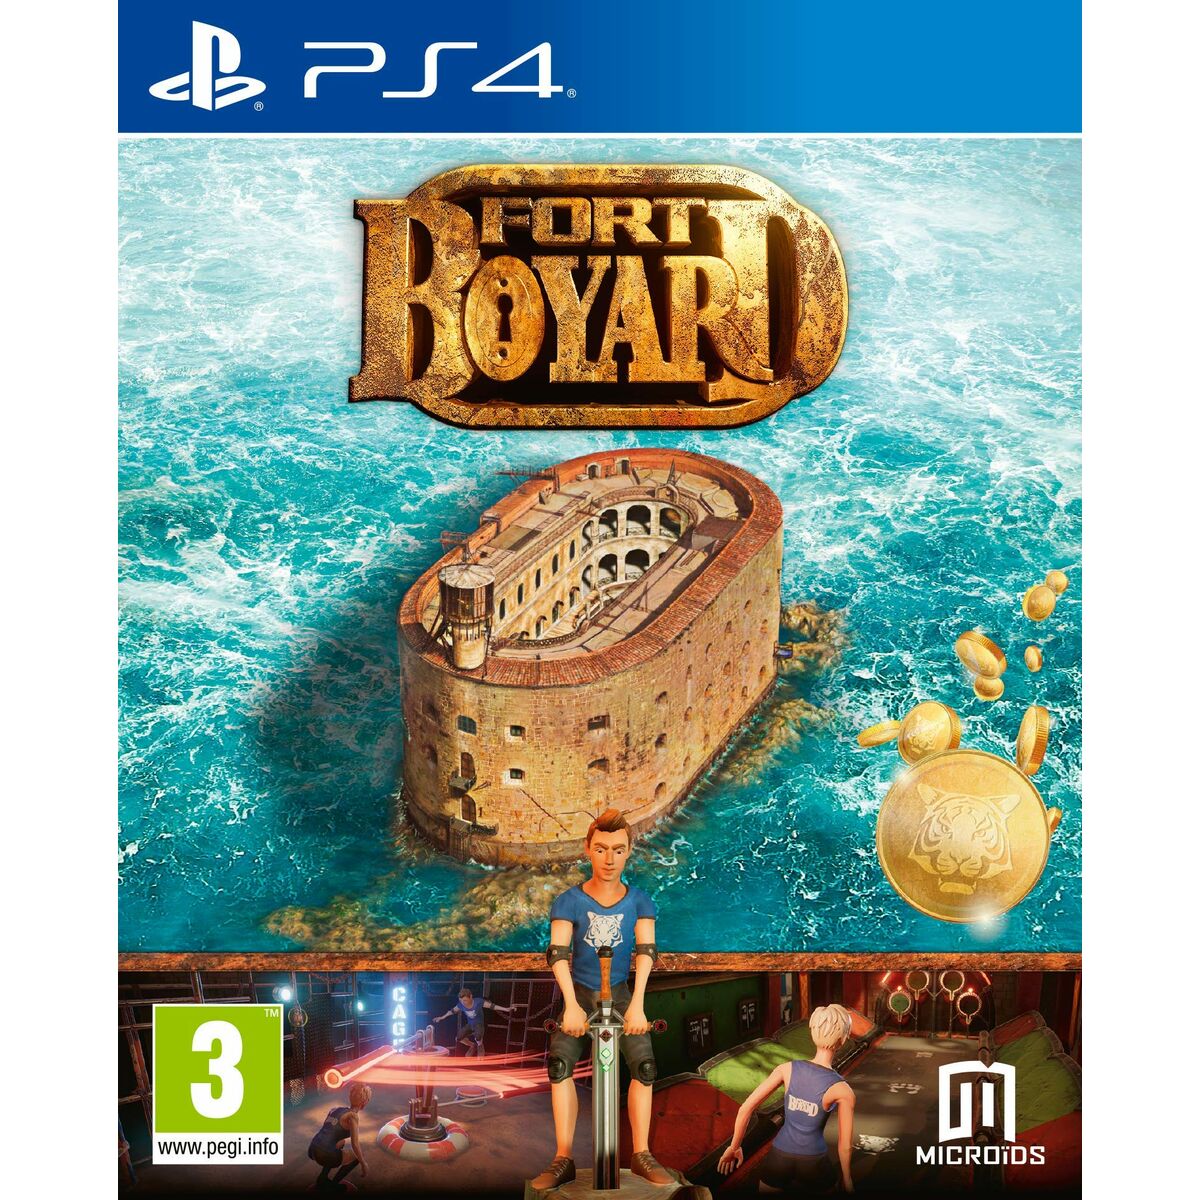 PlayStation 4 Videospiel Meridiem Games Fort Boyard